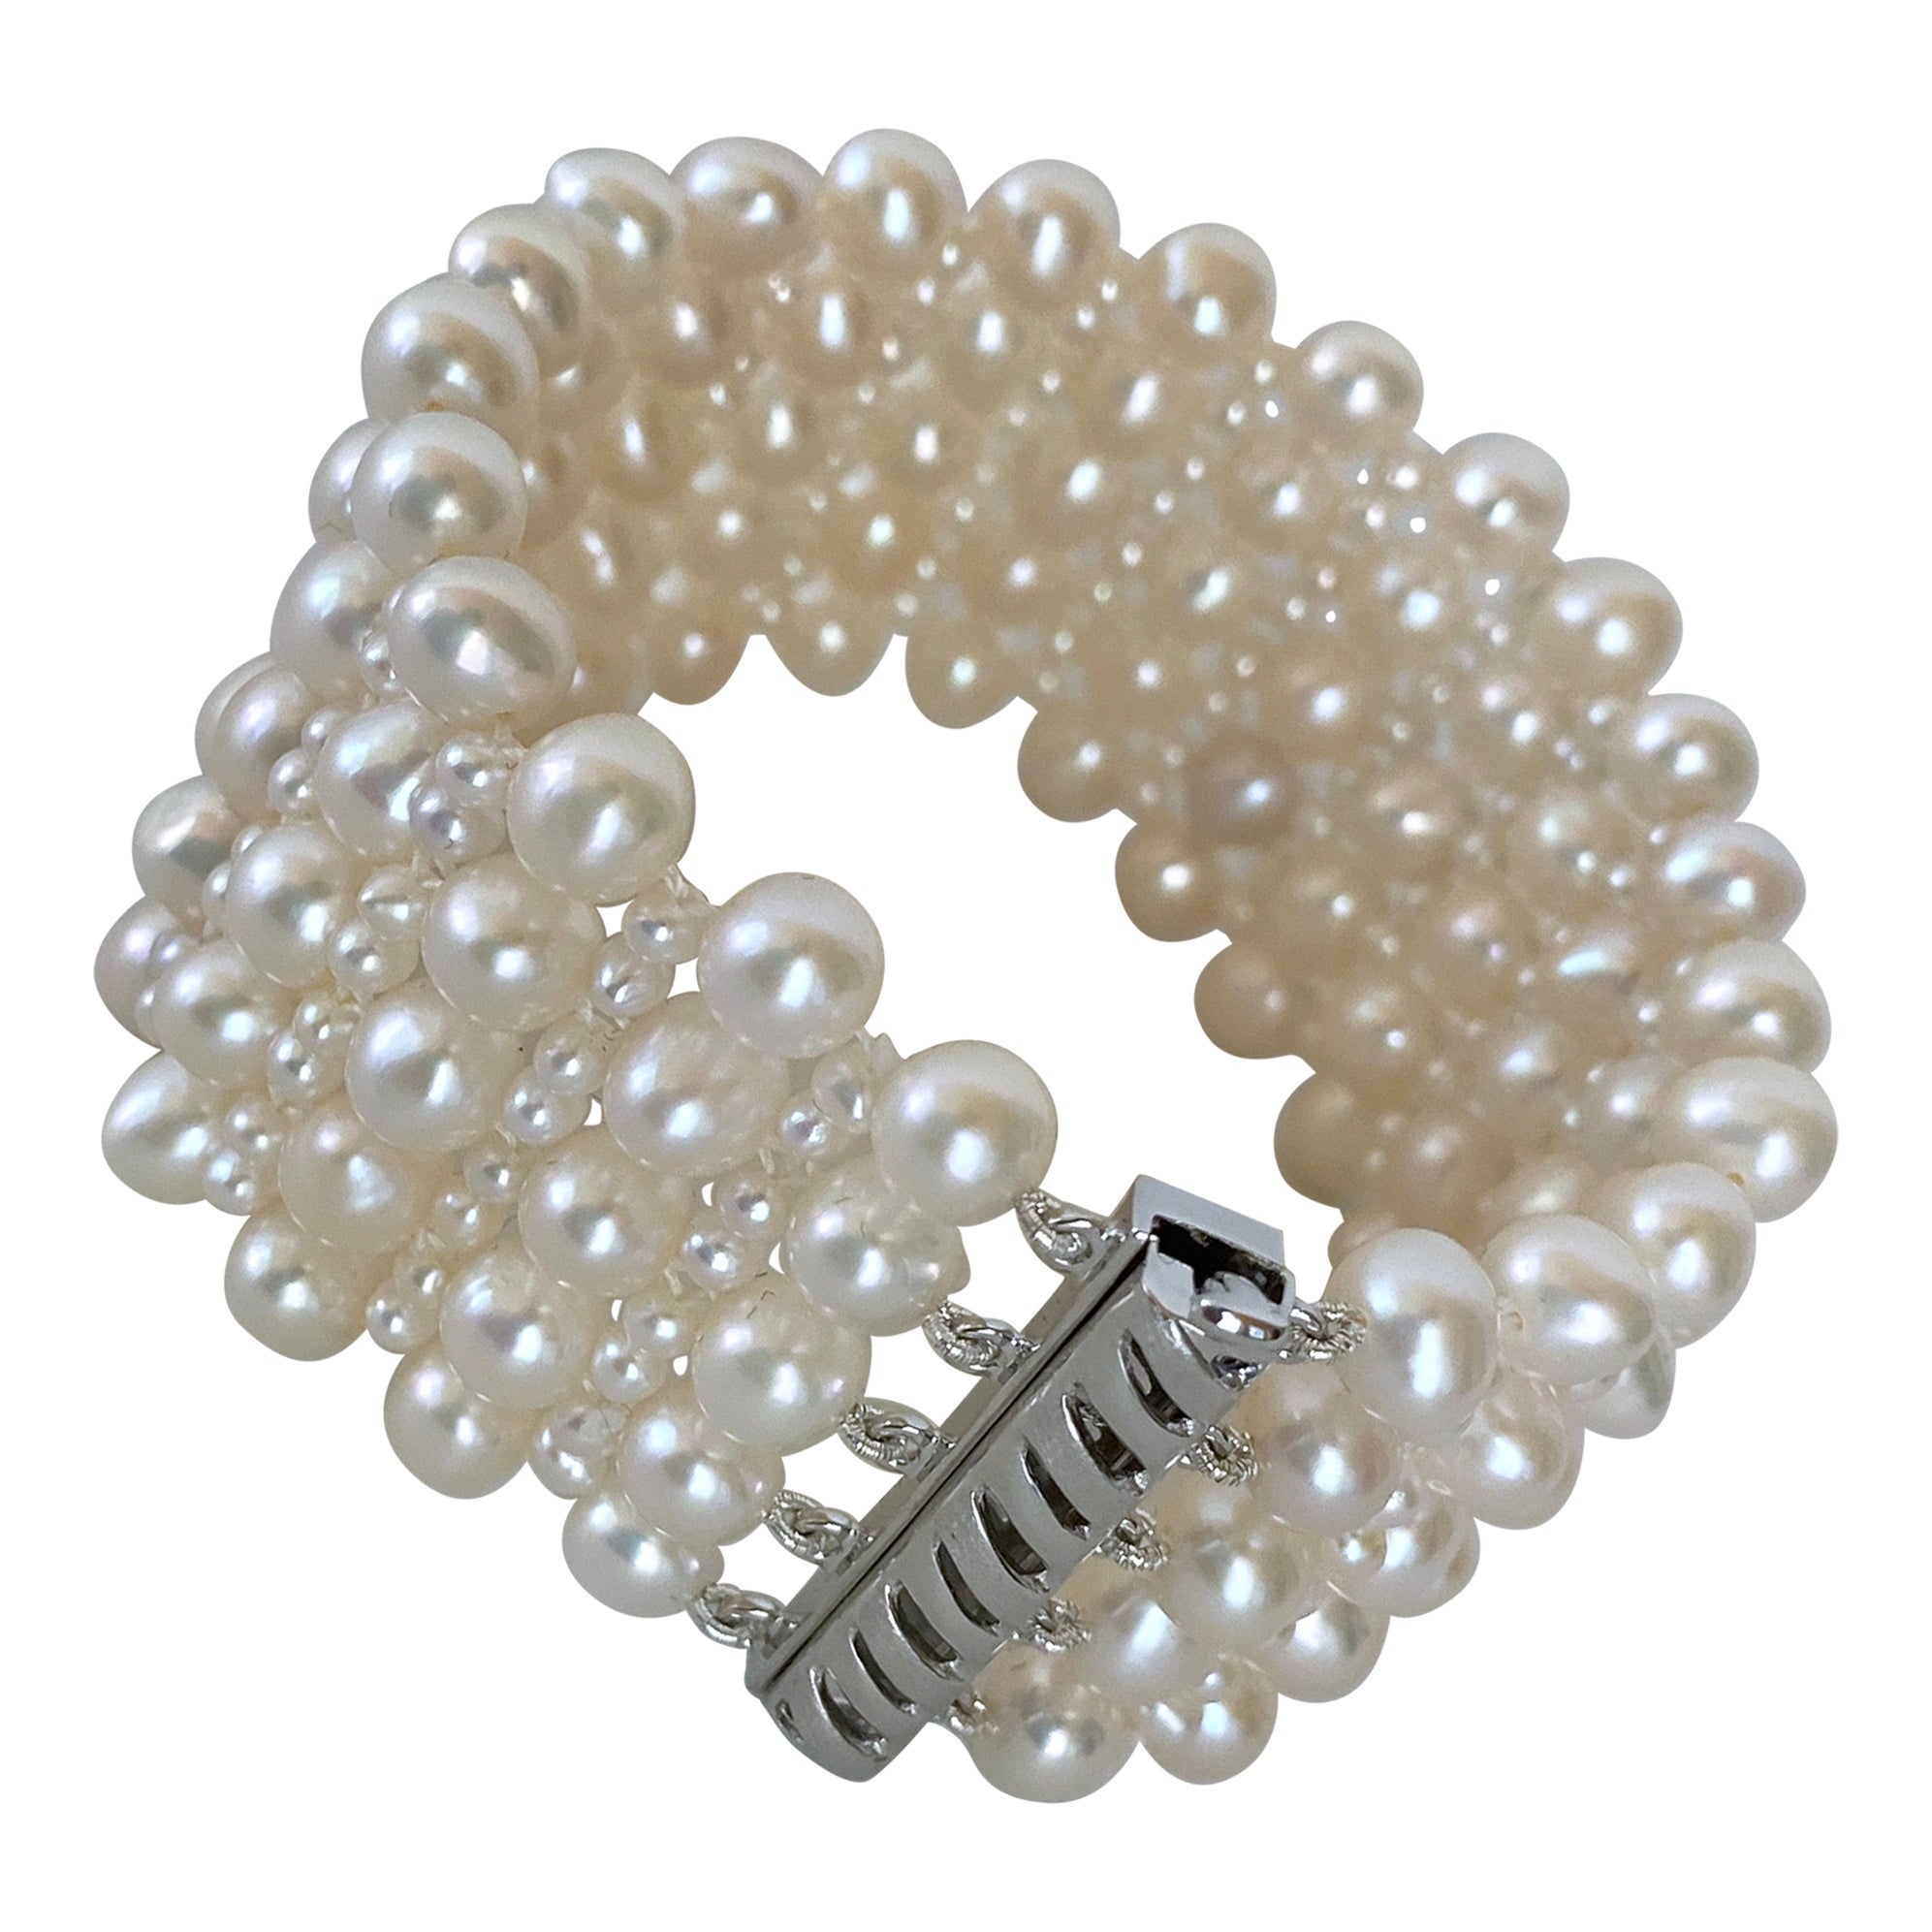 Marina J. Bracelet de mariage en perles tissées avec fermoir en argent plaqué rhodium